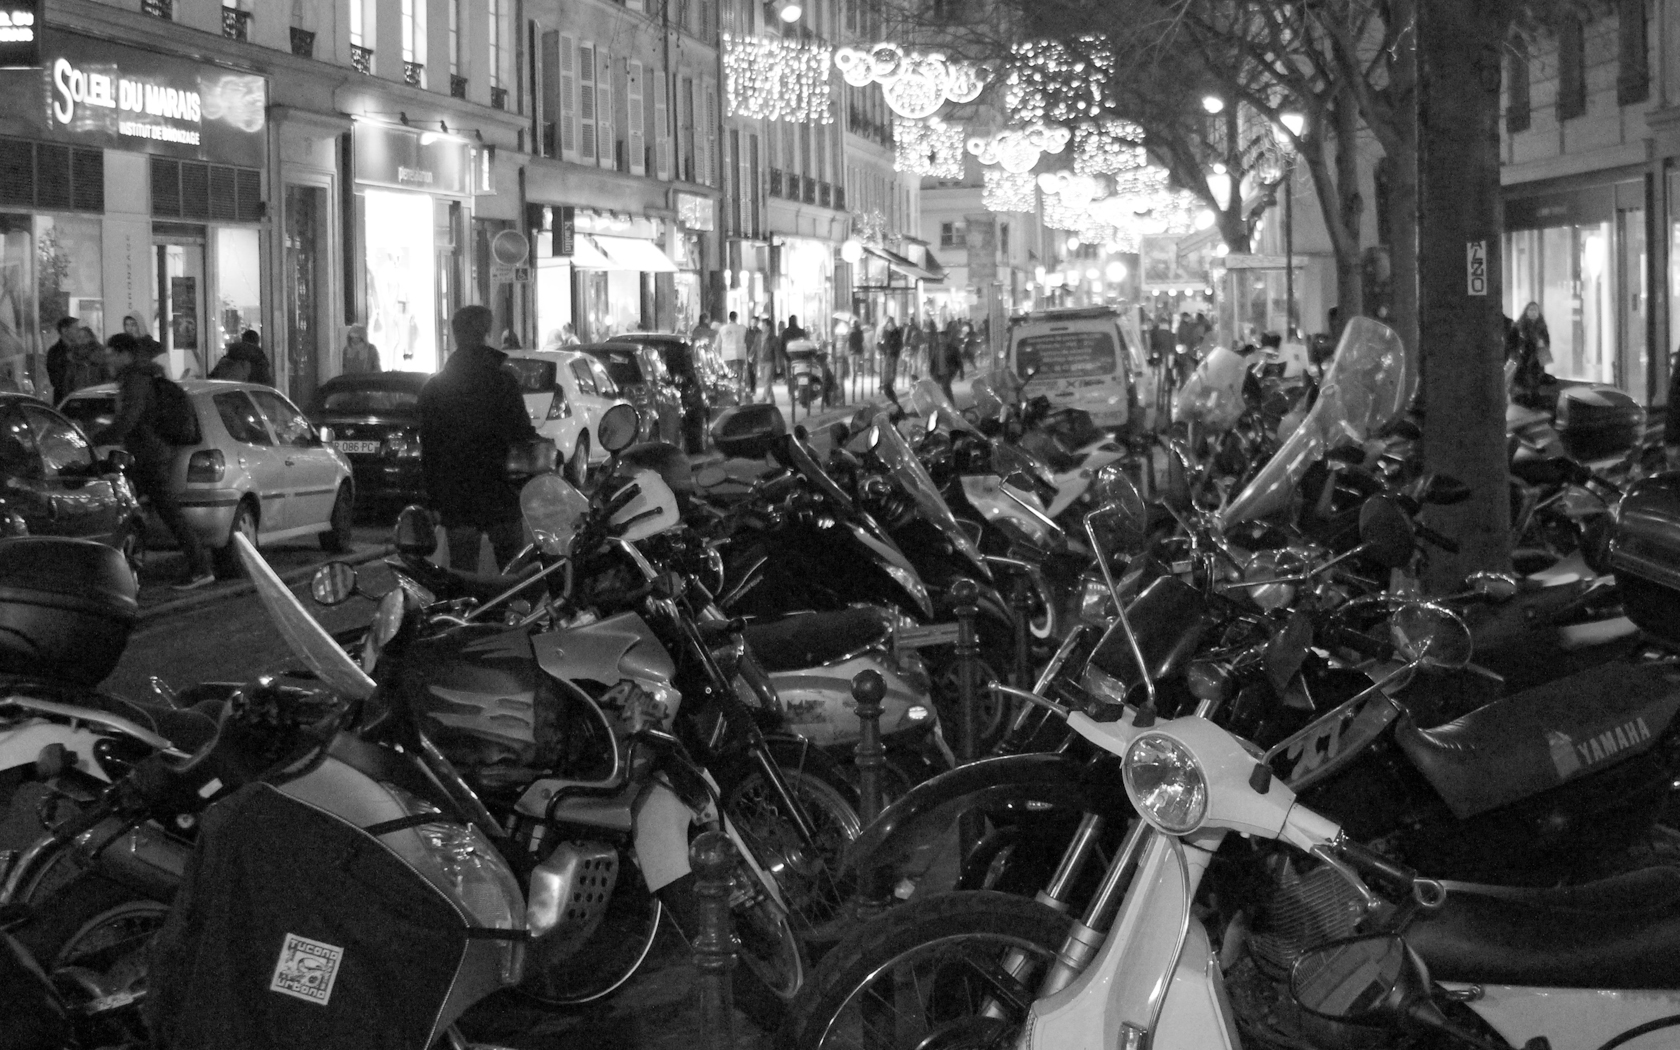 Mopeds - Paris, France